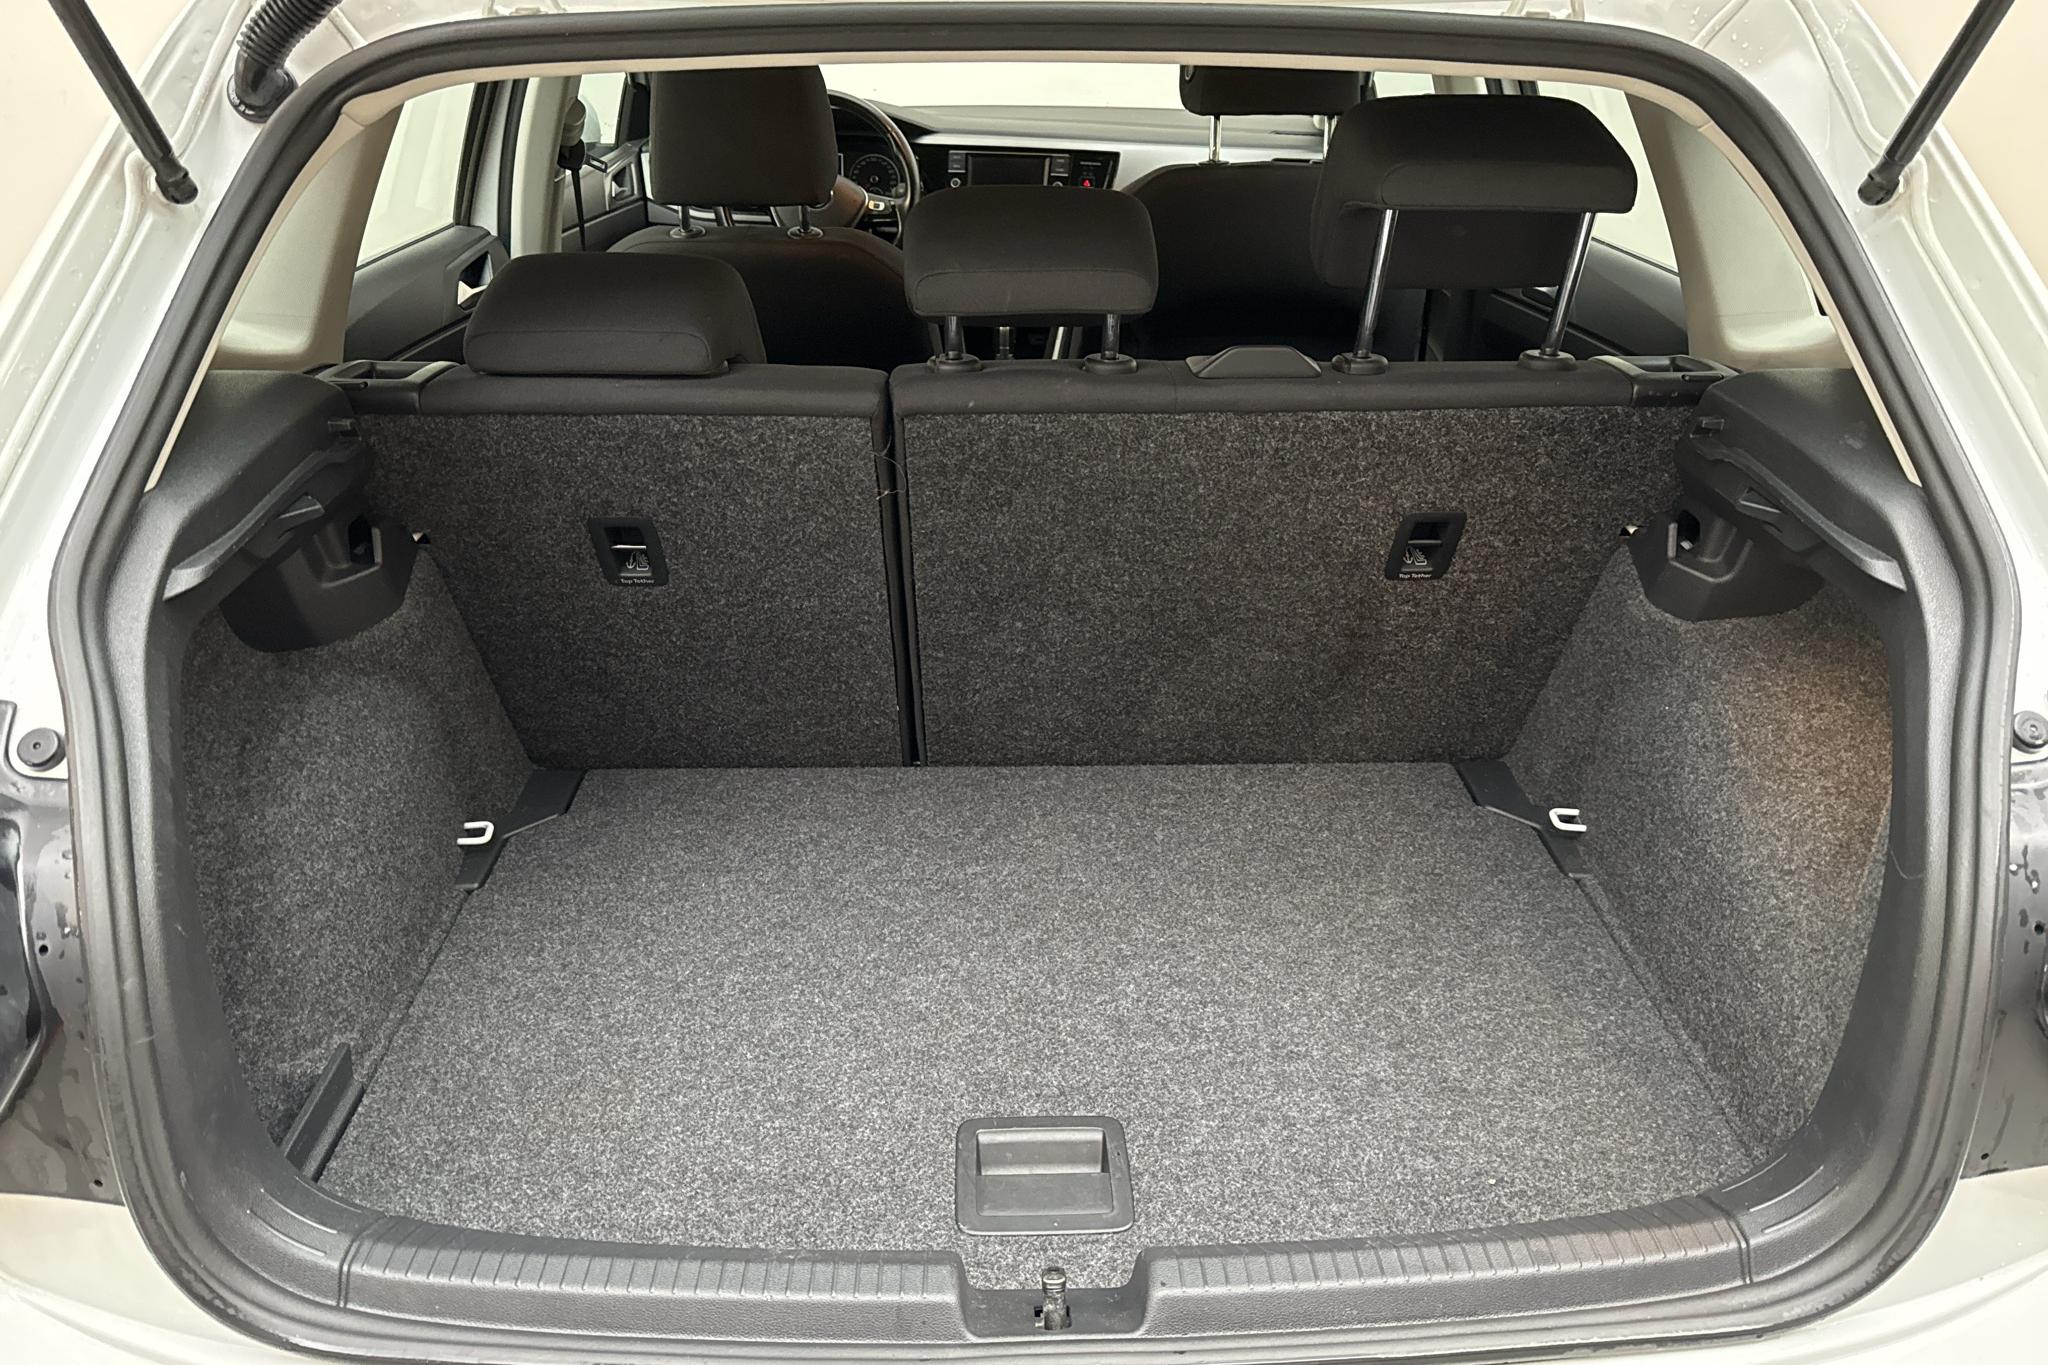 VW Polo 1.0 TSI 5dr (95hk) - 11 844 mil - Automat - vit - 2018